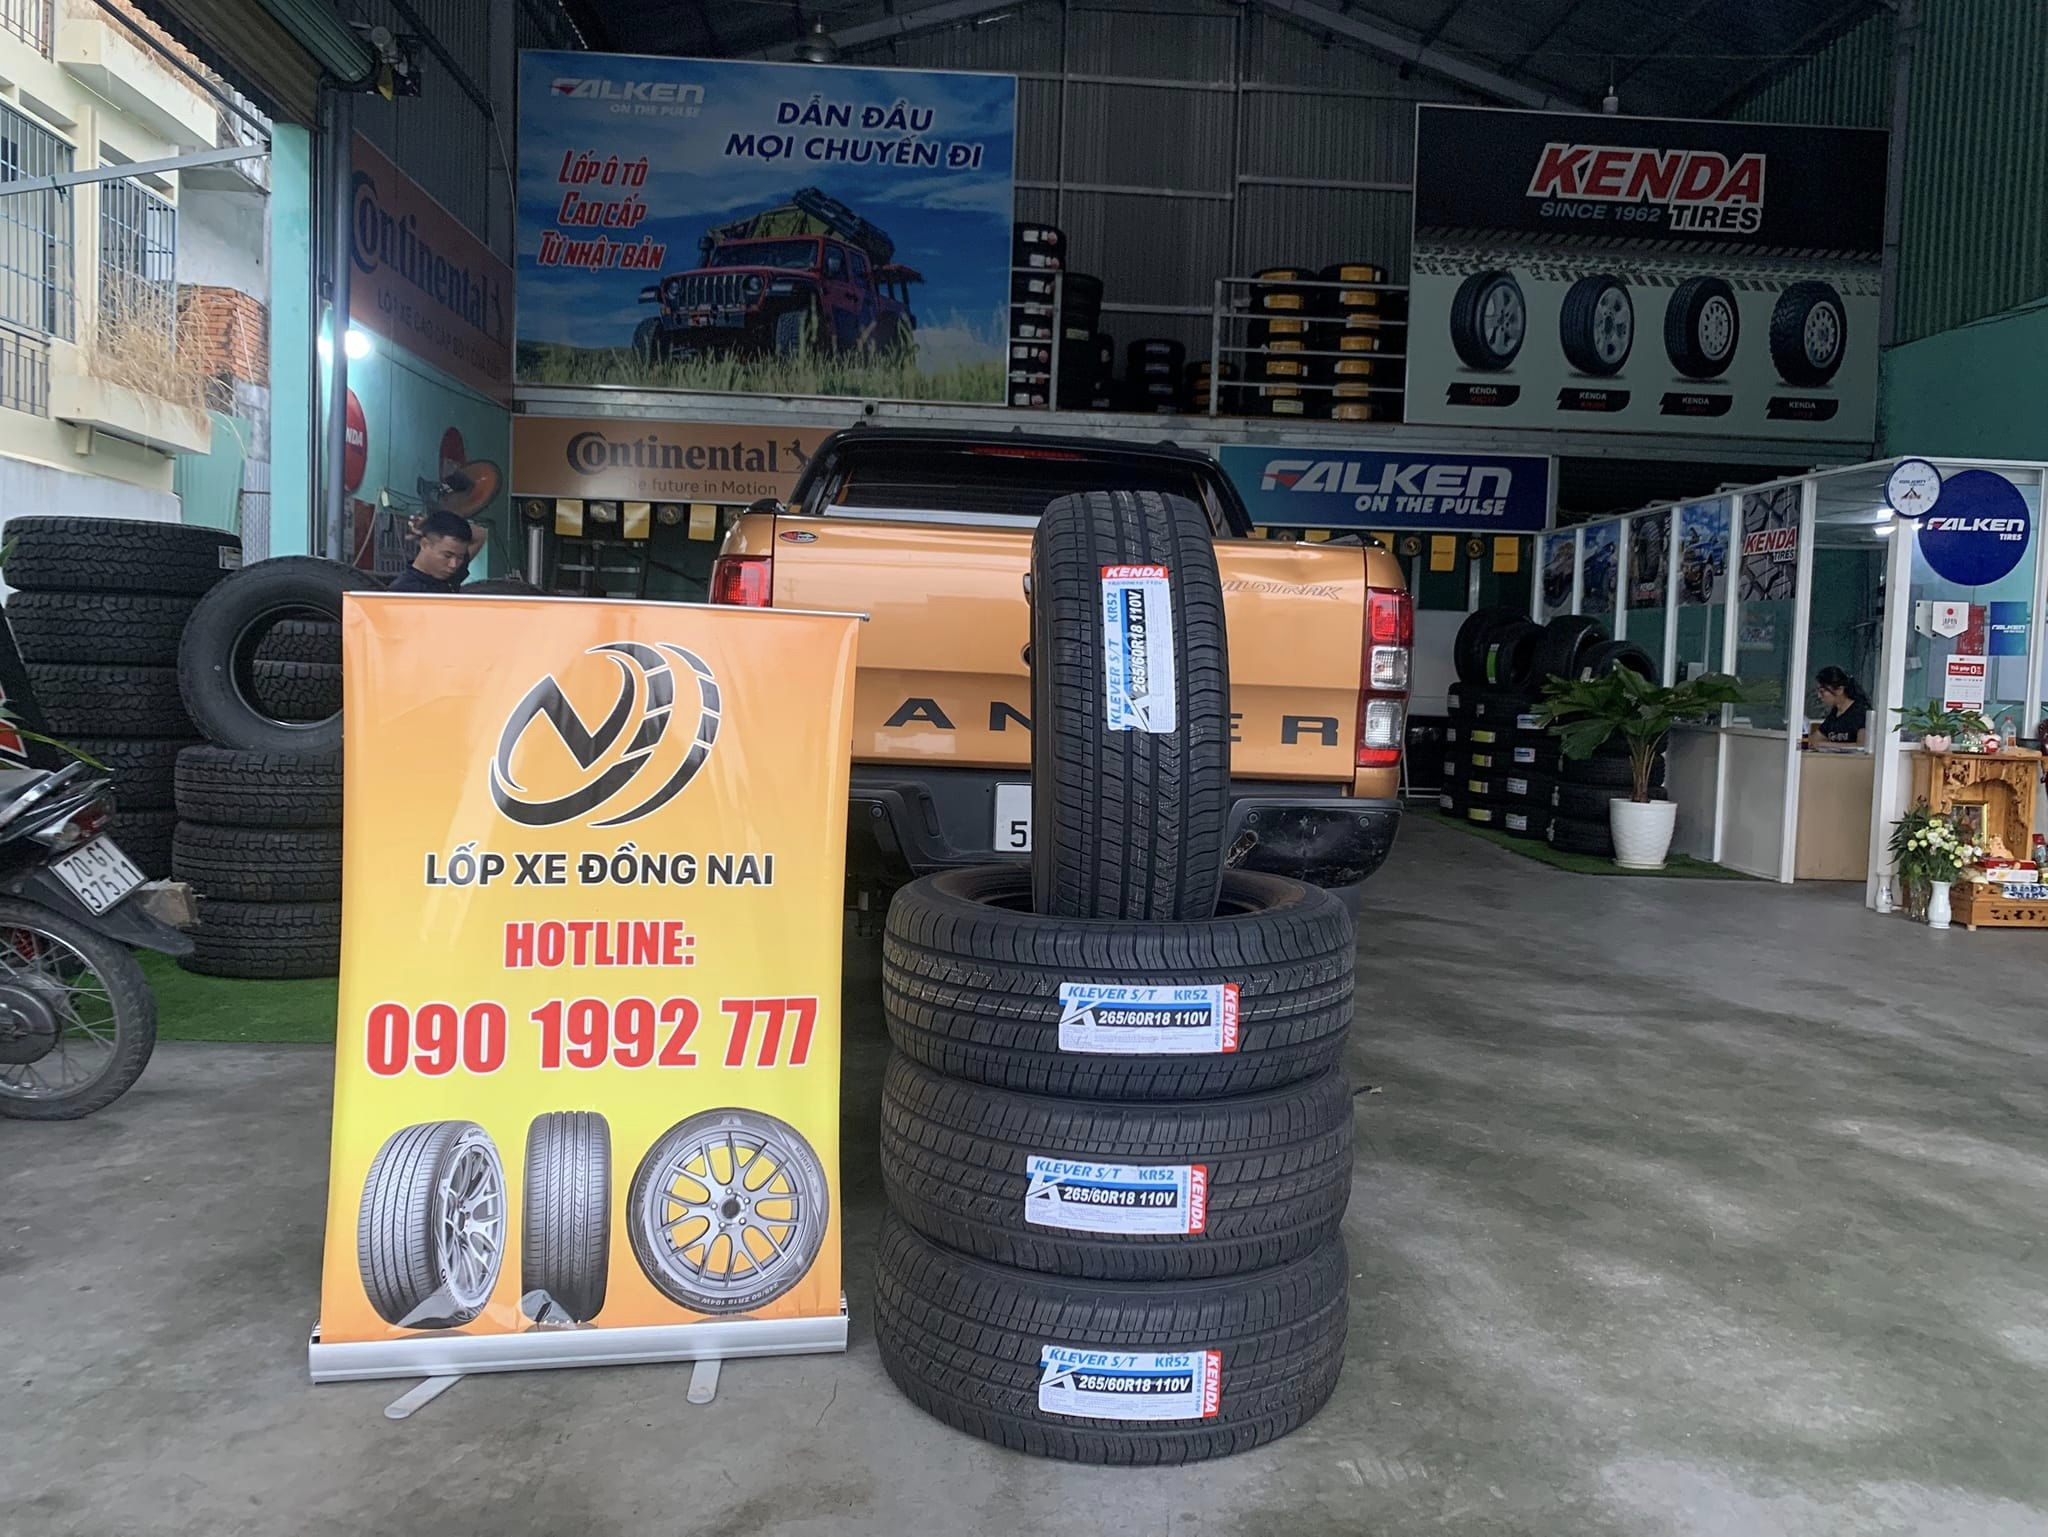 TƯ VẤN : Thay lốp xe Ford Ranger Wildtrack chính hãng ở Long Thành, Đồng Nai.